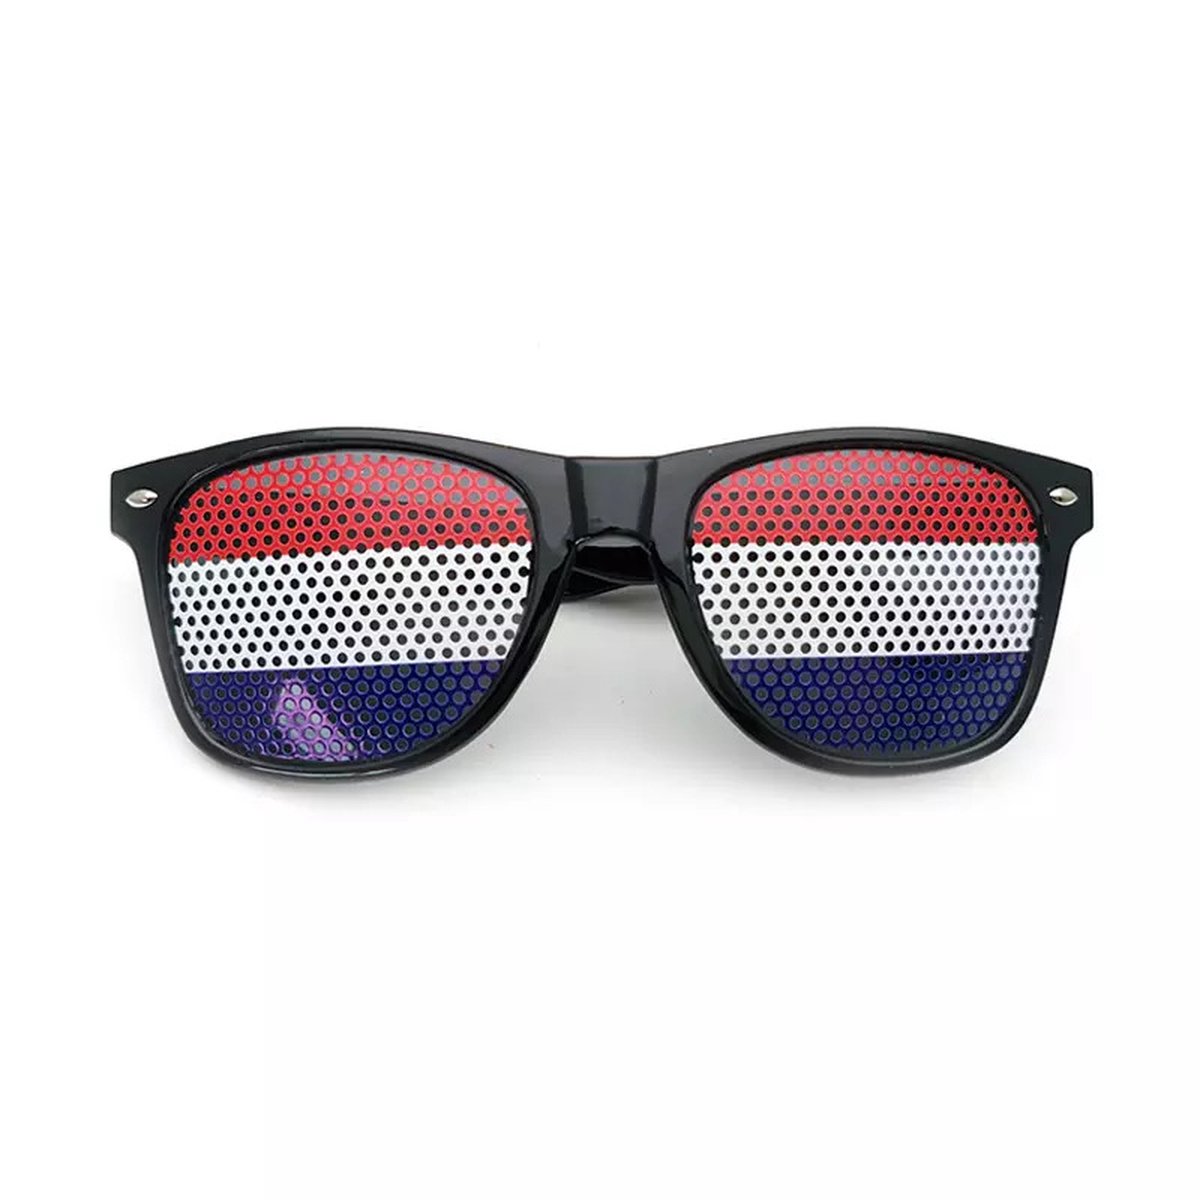 Freaky Glasses - Pinhole zonnebril Nederland - Festivalbril - Bril - Feest - Glasses - Dames - Heren - Unisex -Kunststof - zwart - rood - wit - blauw